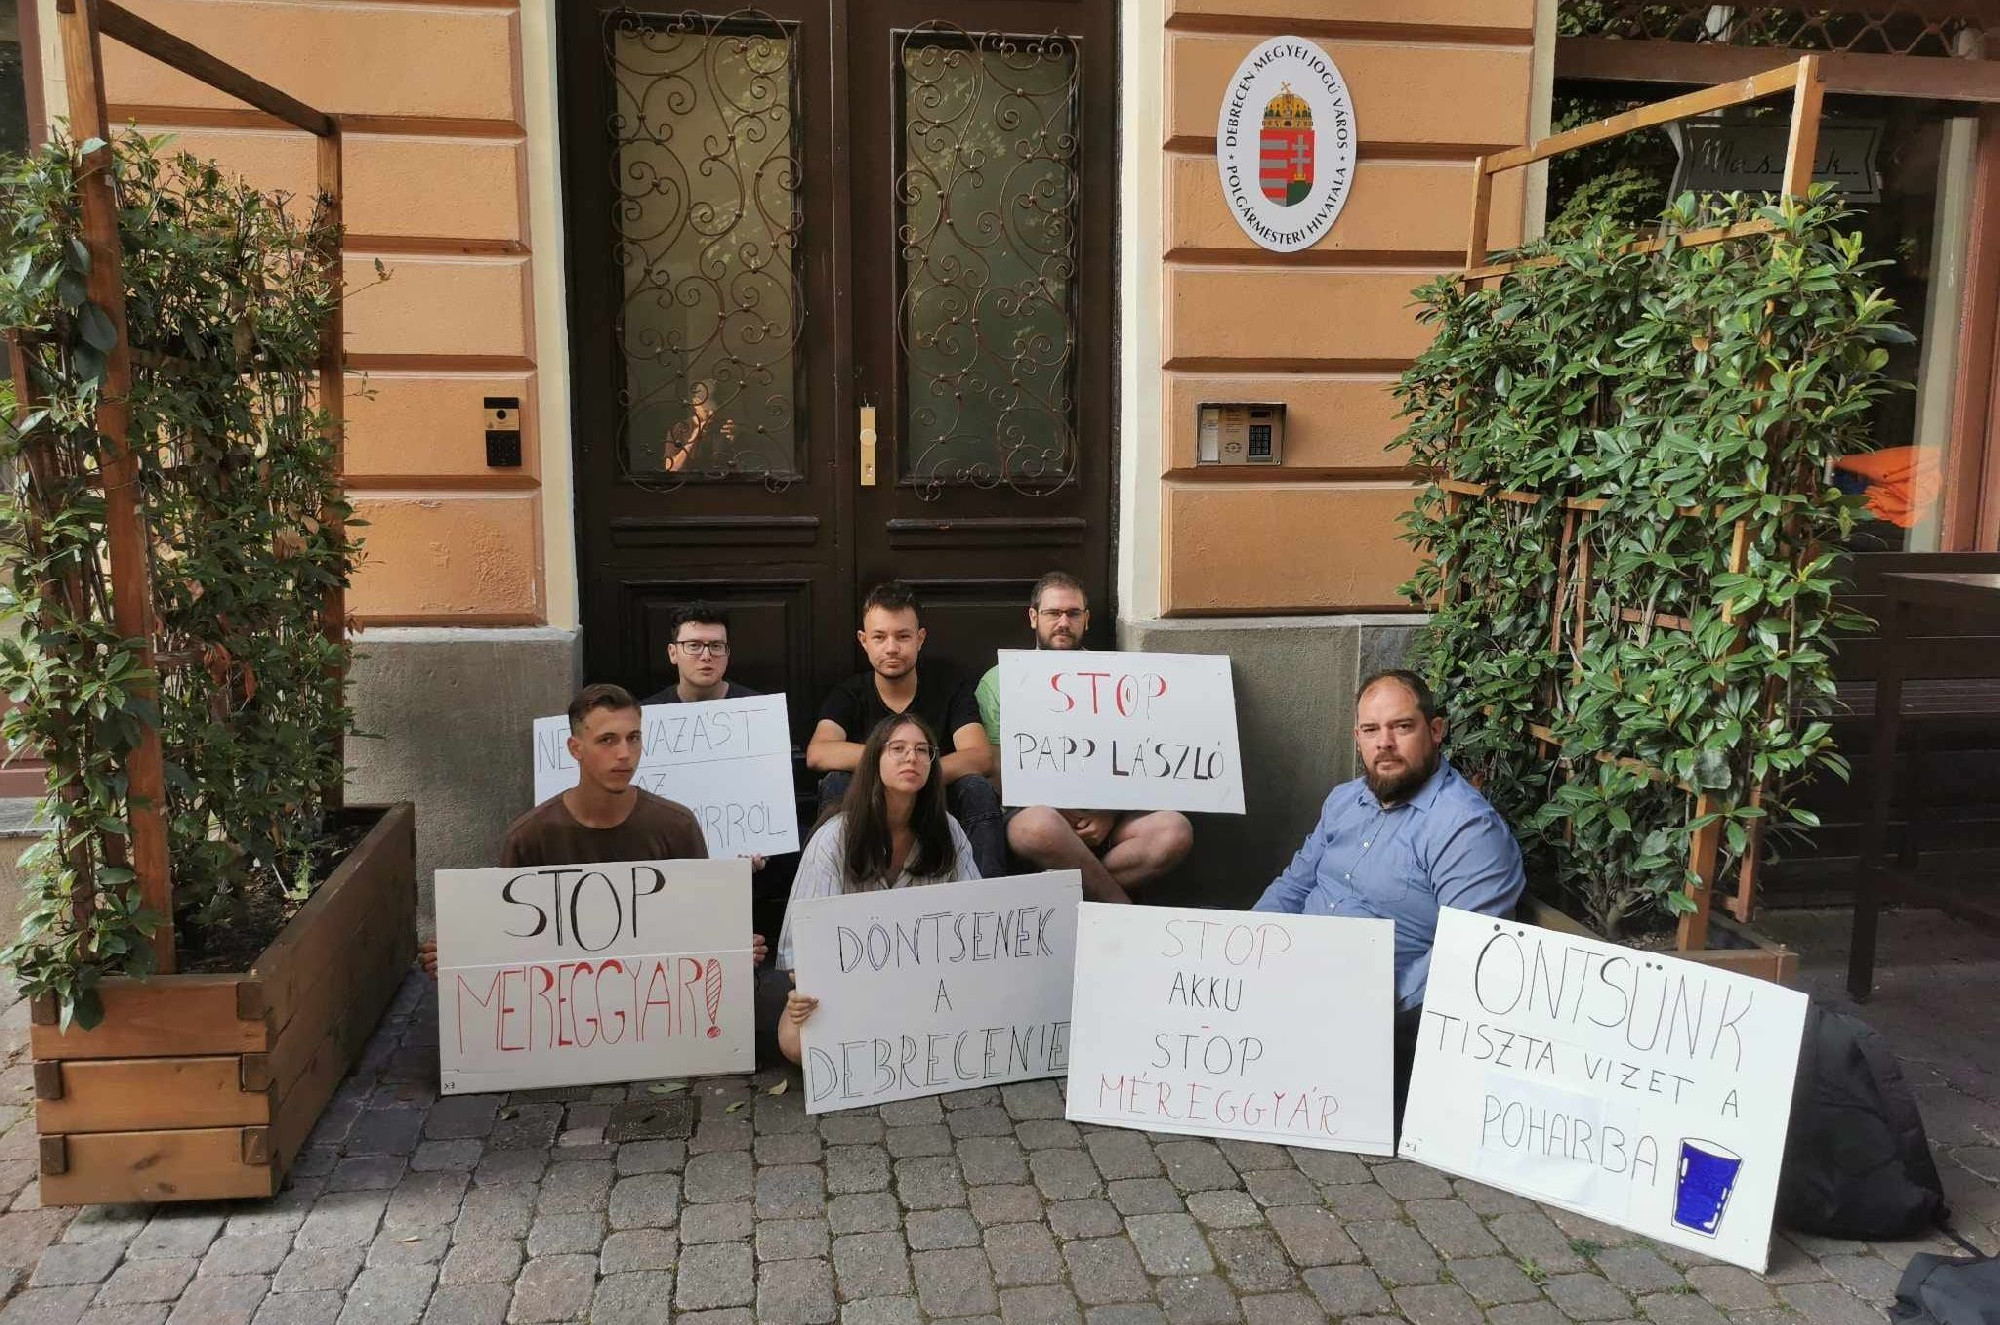 Debreceni fideszes vezetés: A Momentum erőszakos képviselői távozzanak a közéletből!